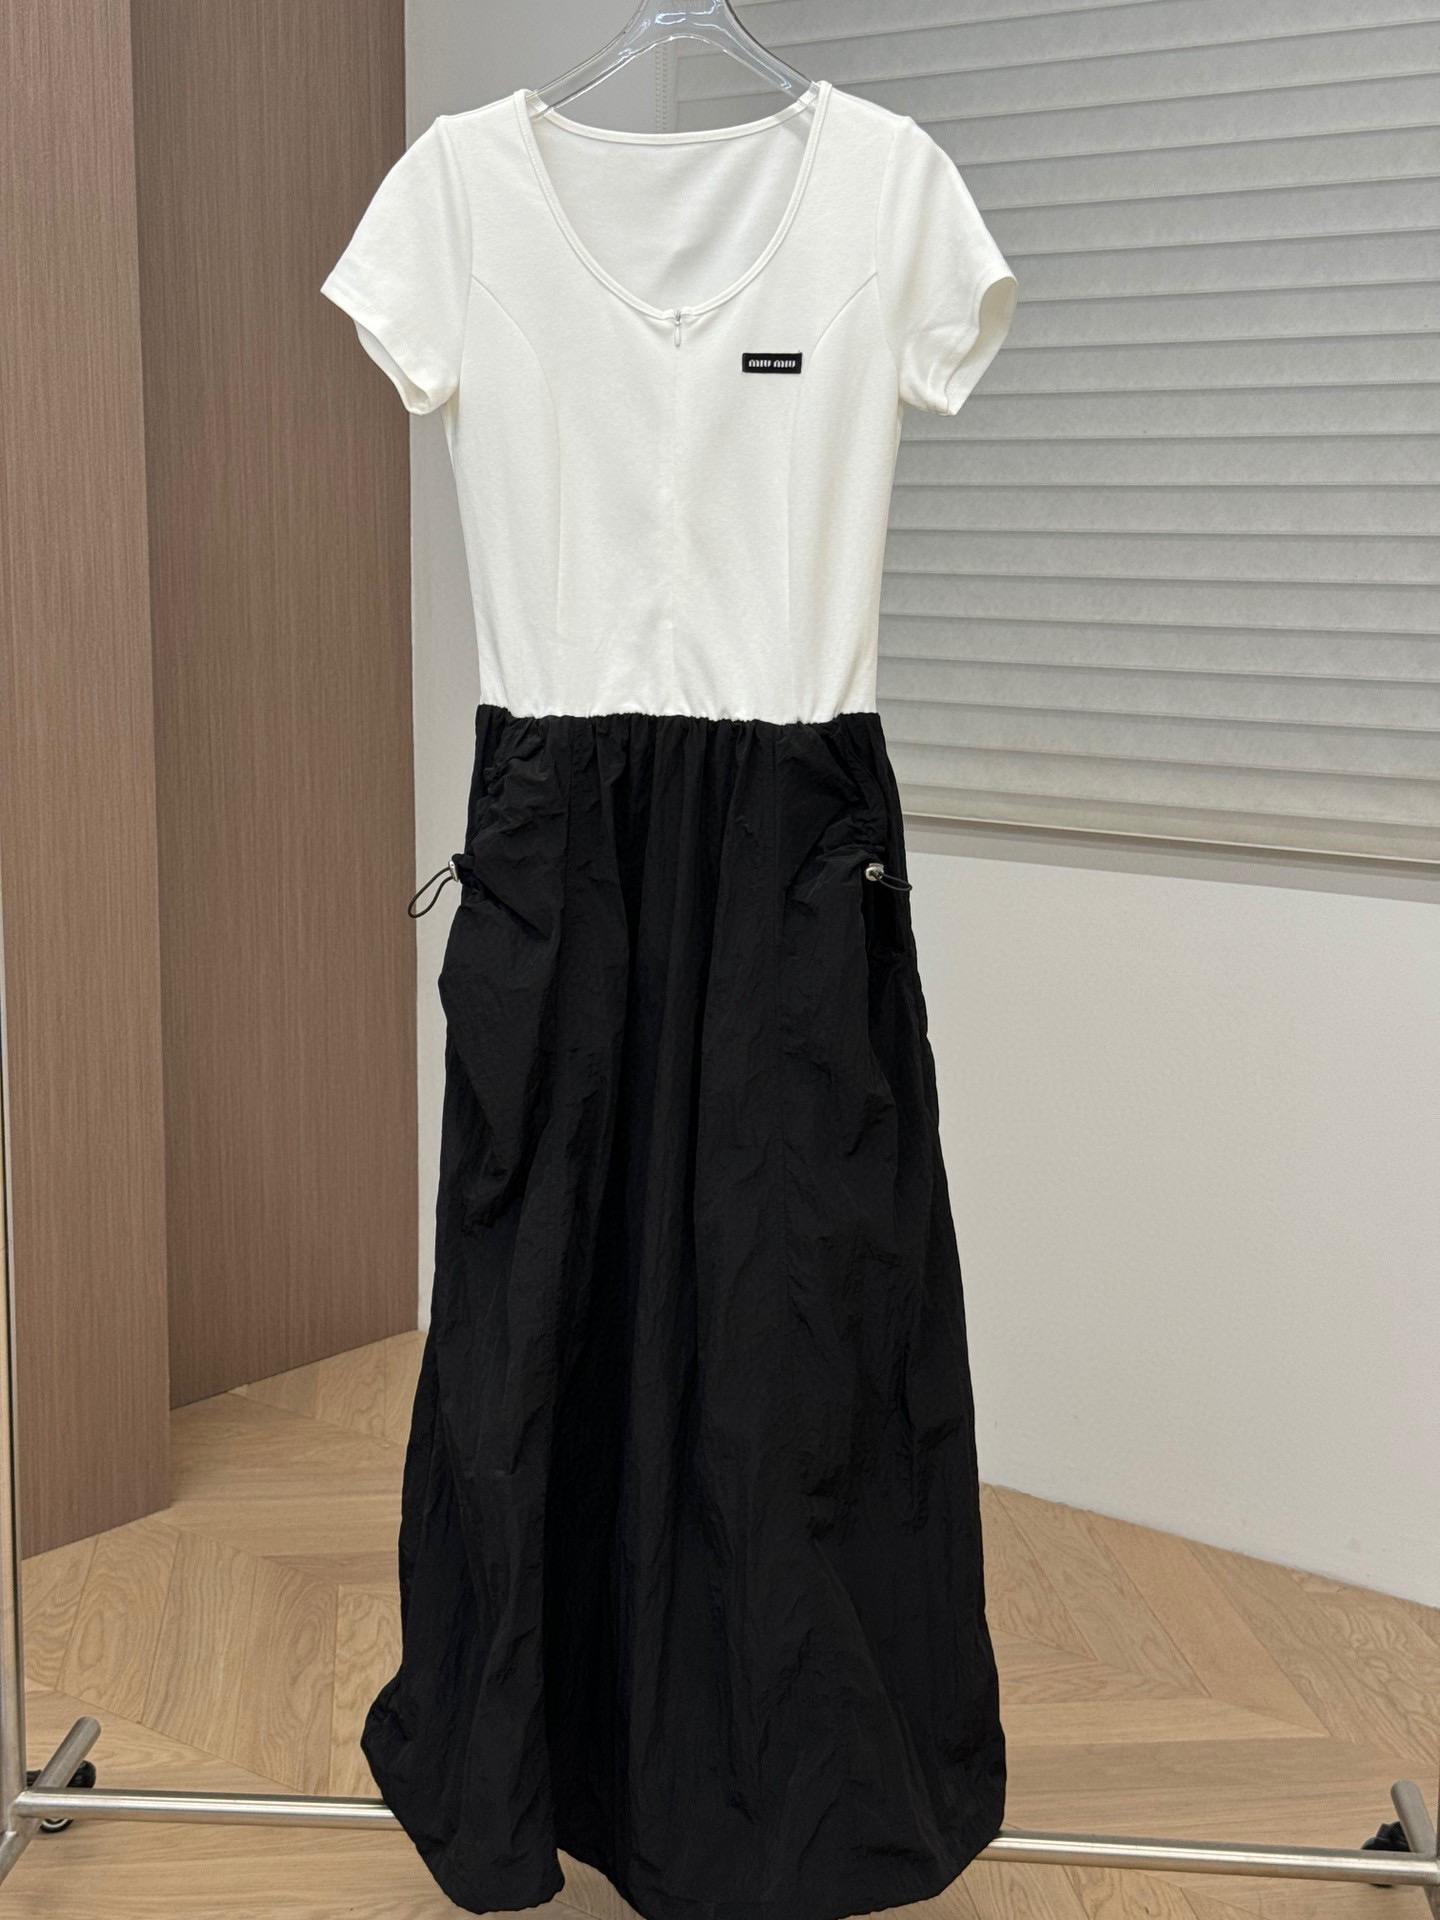 【新款发售】???????????? Miumiu黑白撞色拼接设计连衣裙 高品质????pzydlb SML